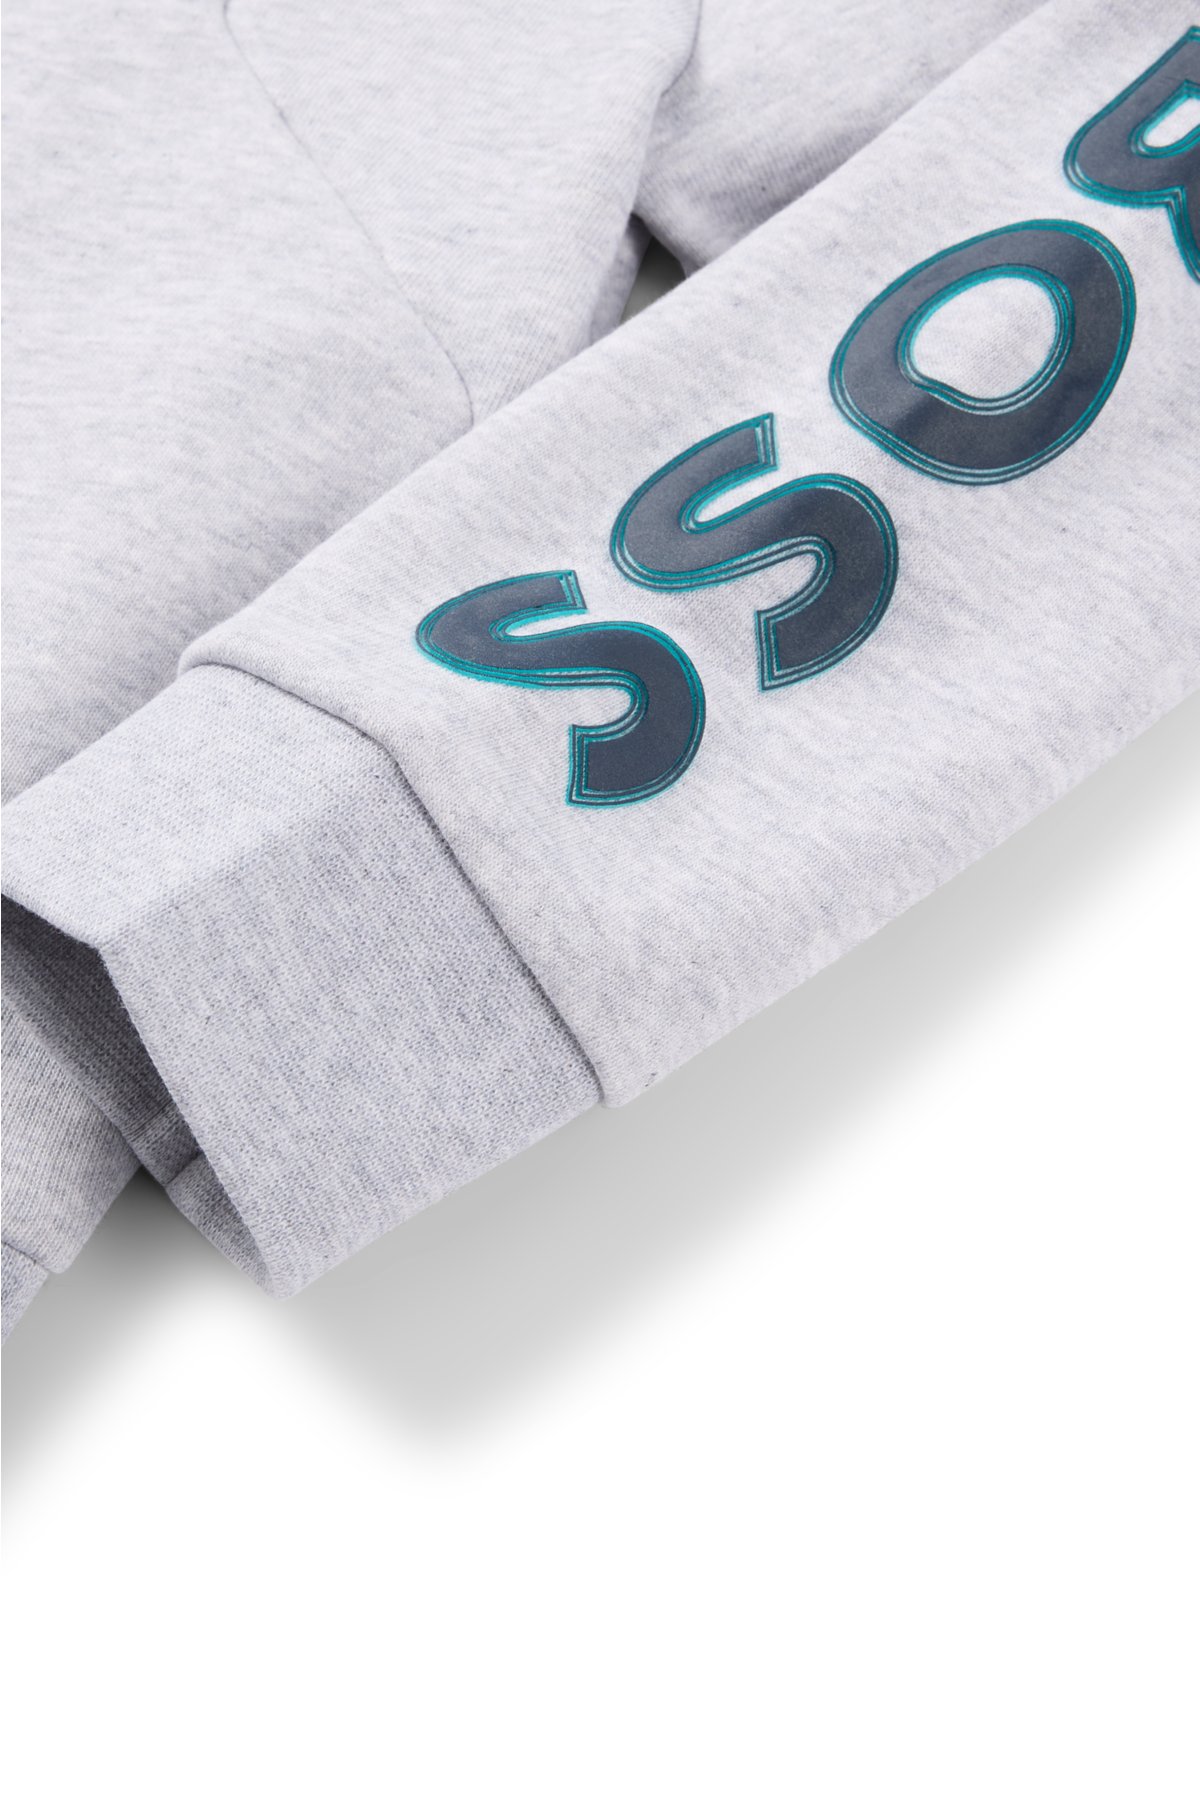 Kids' zip-up fleece hoodie with embossed logo, Light Grey